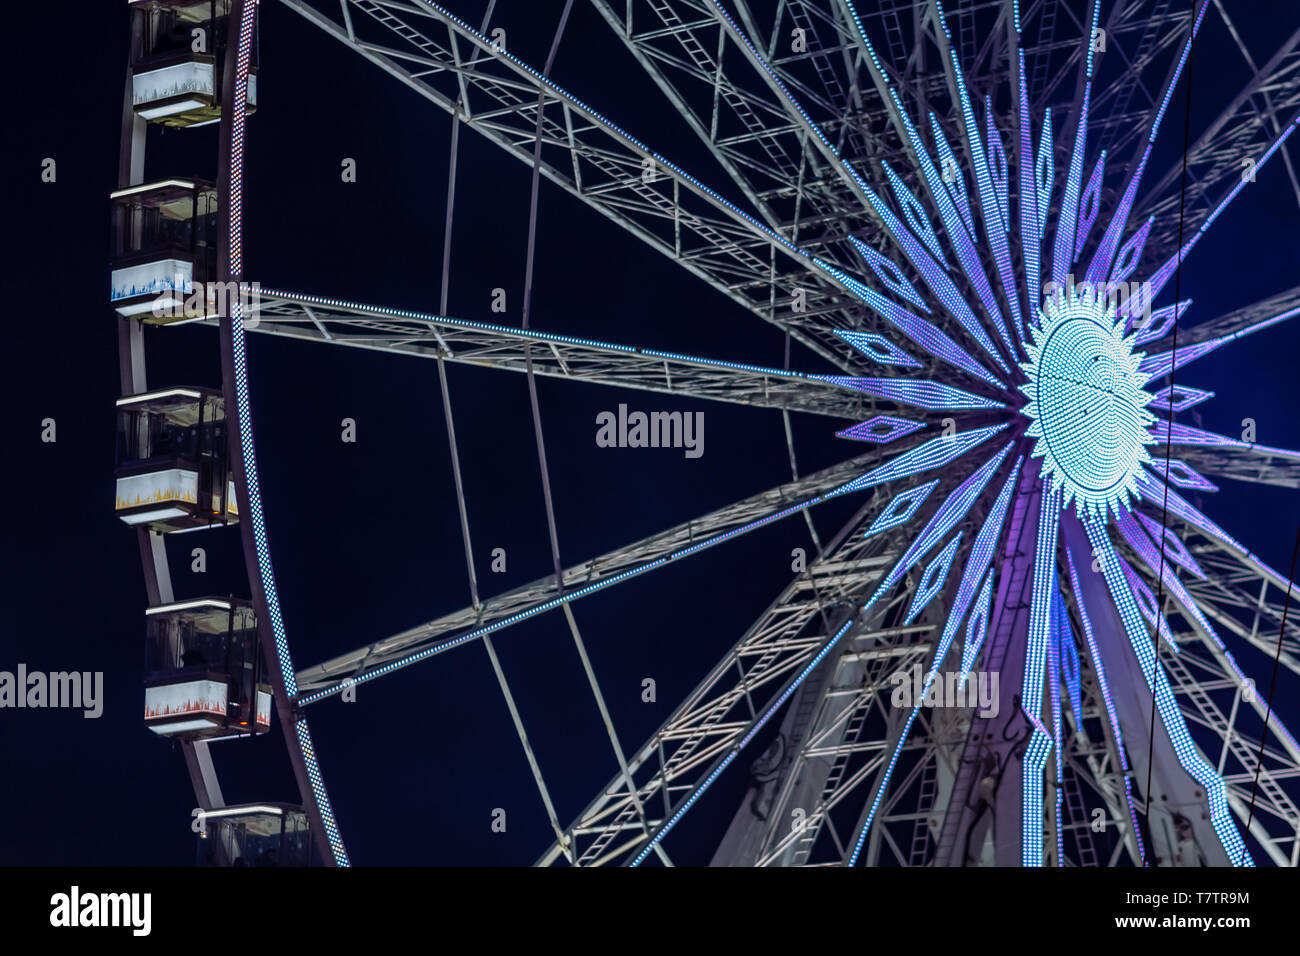 Vergnügungspark in der Nacht - Riesenrad in Bewegung Stockfoto